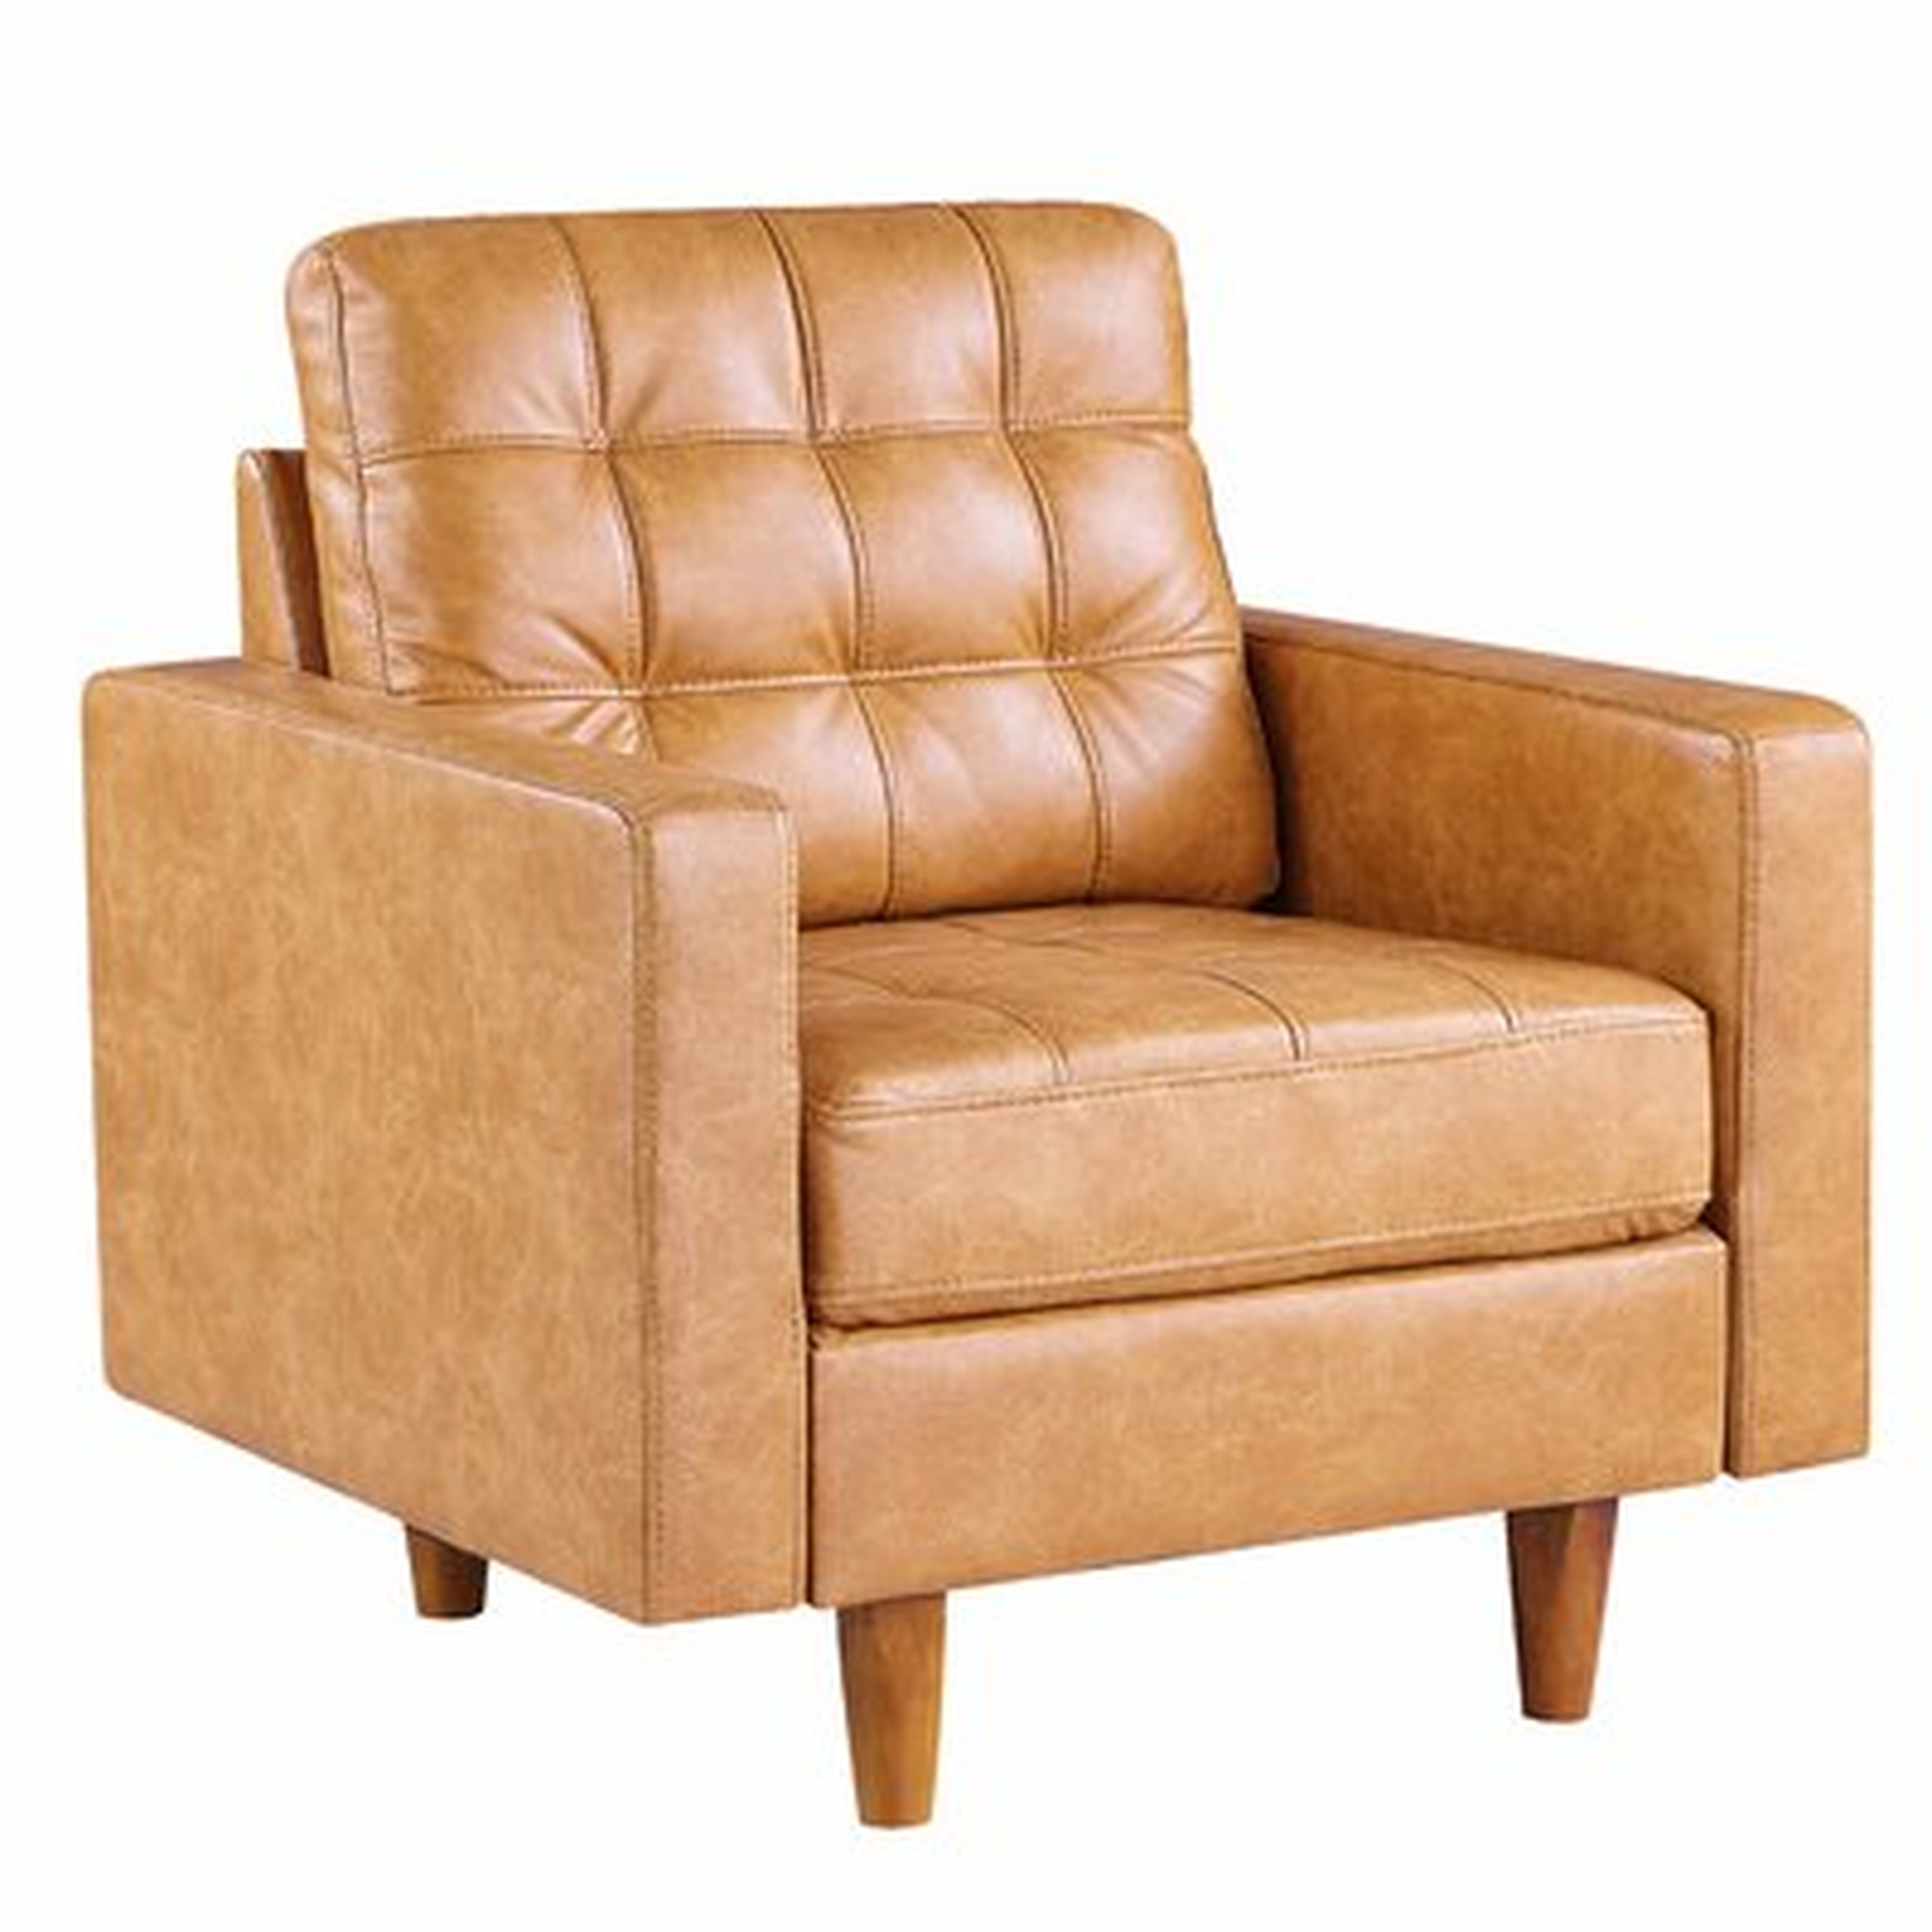 36.5" Wide Tufted Leather Armchair - Wayfair